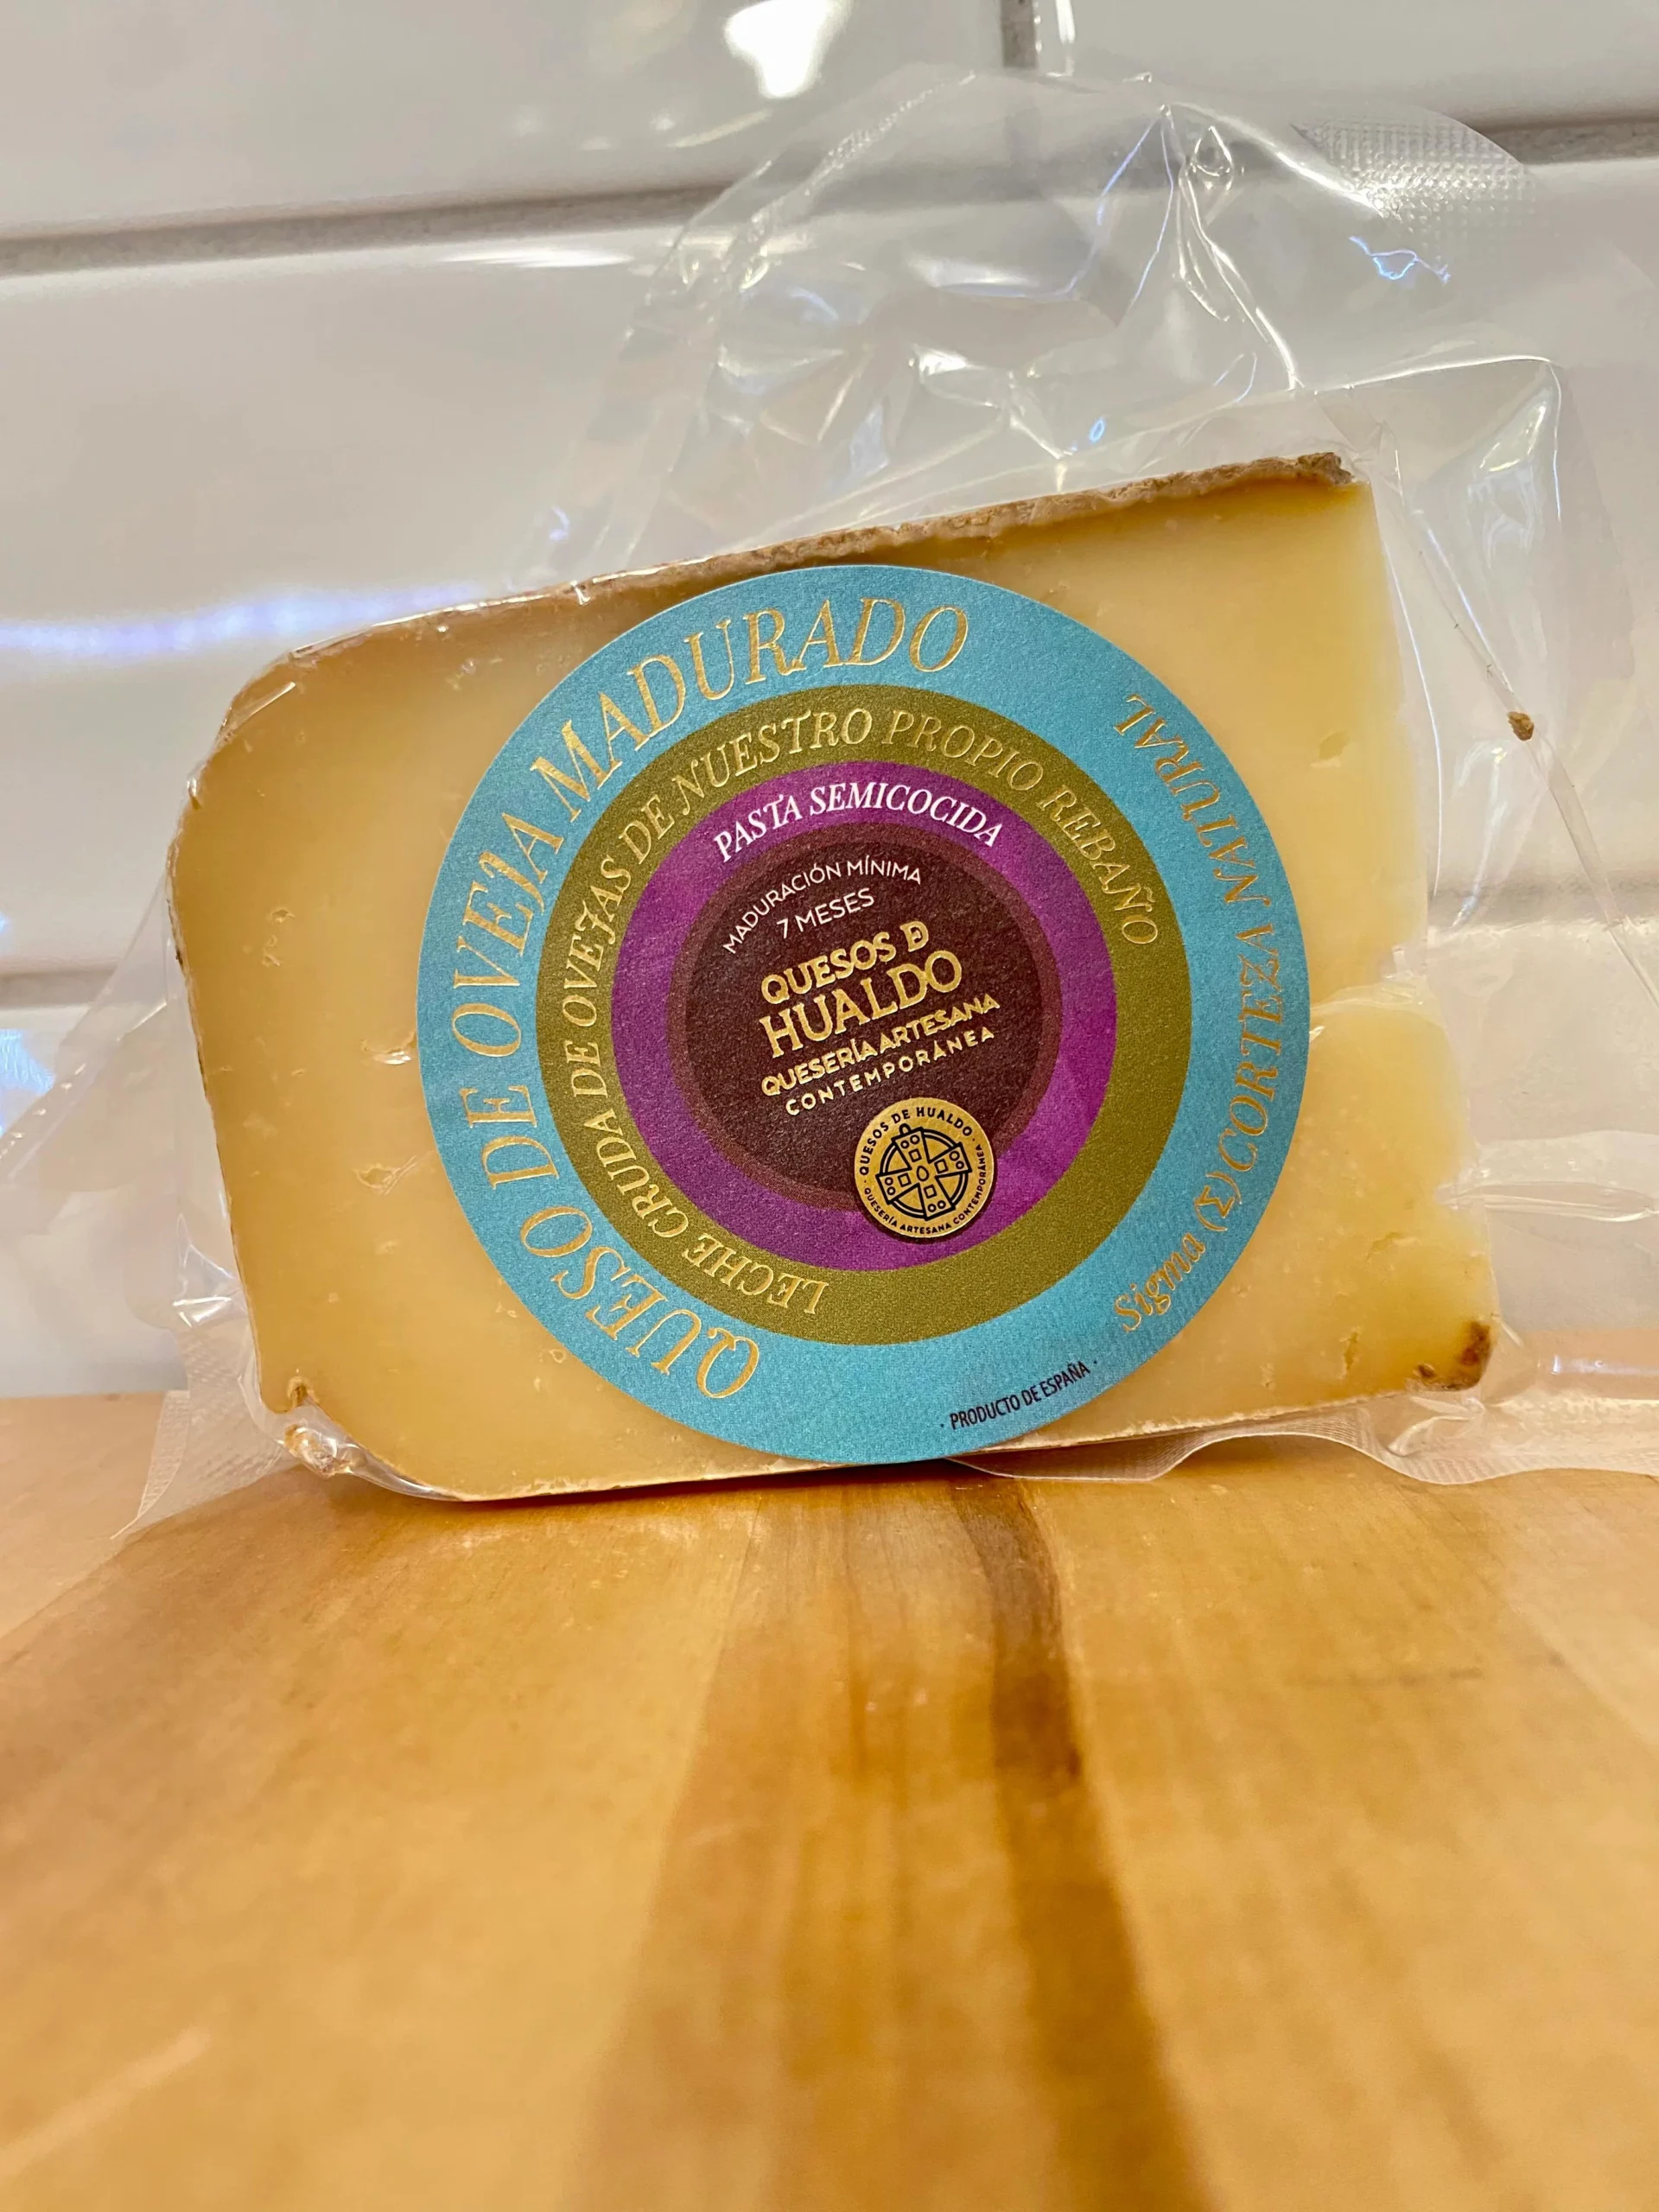 quesos de hualdo - Cuál es el queso más antiguo del mundo